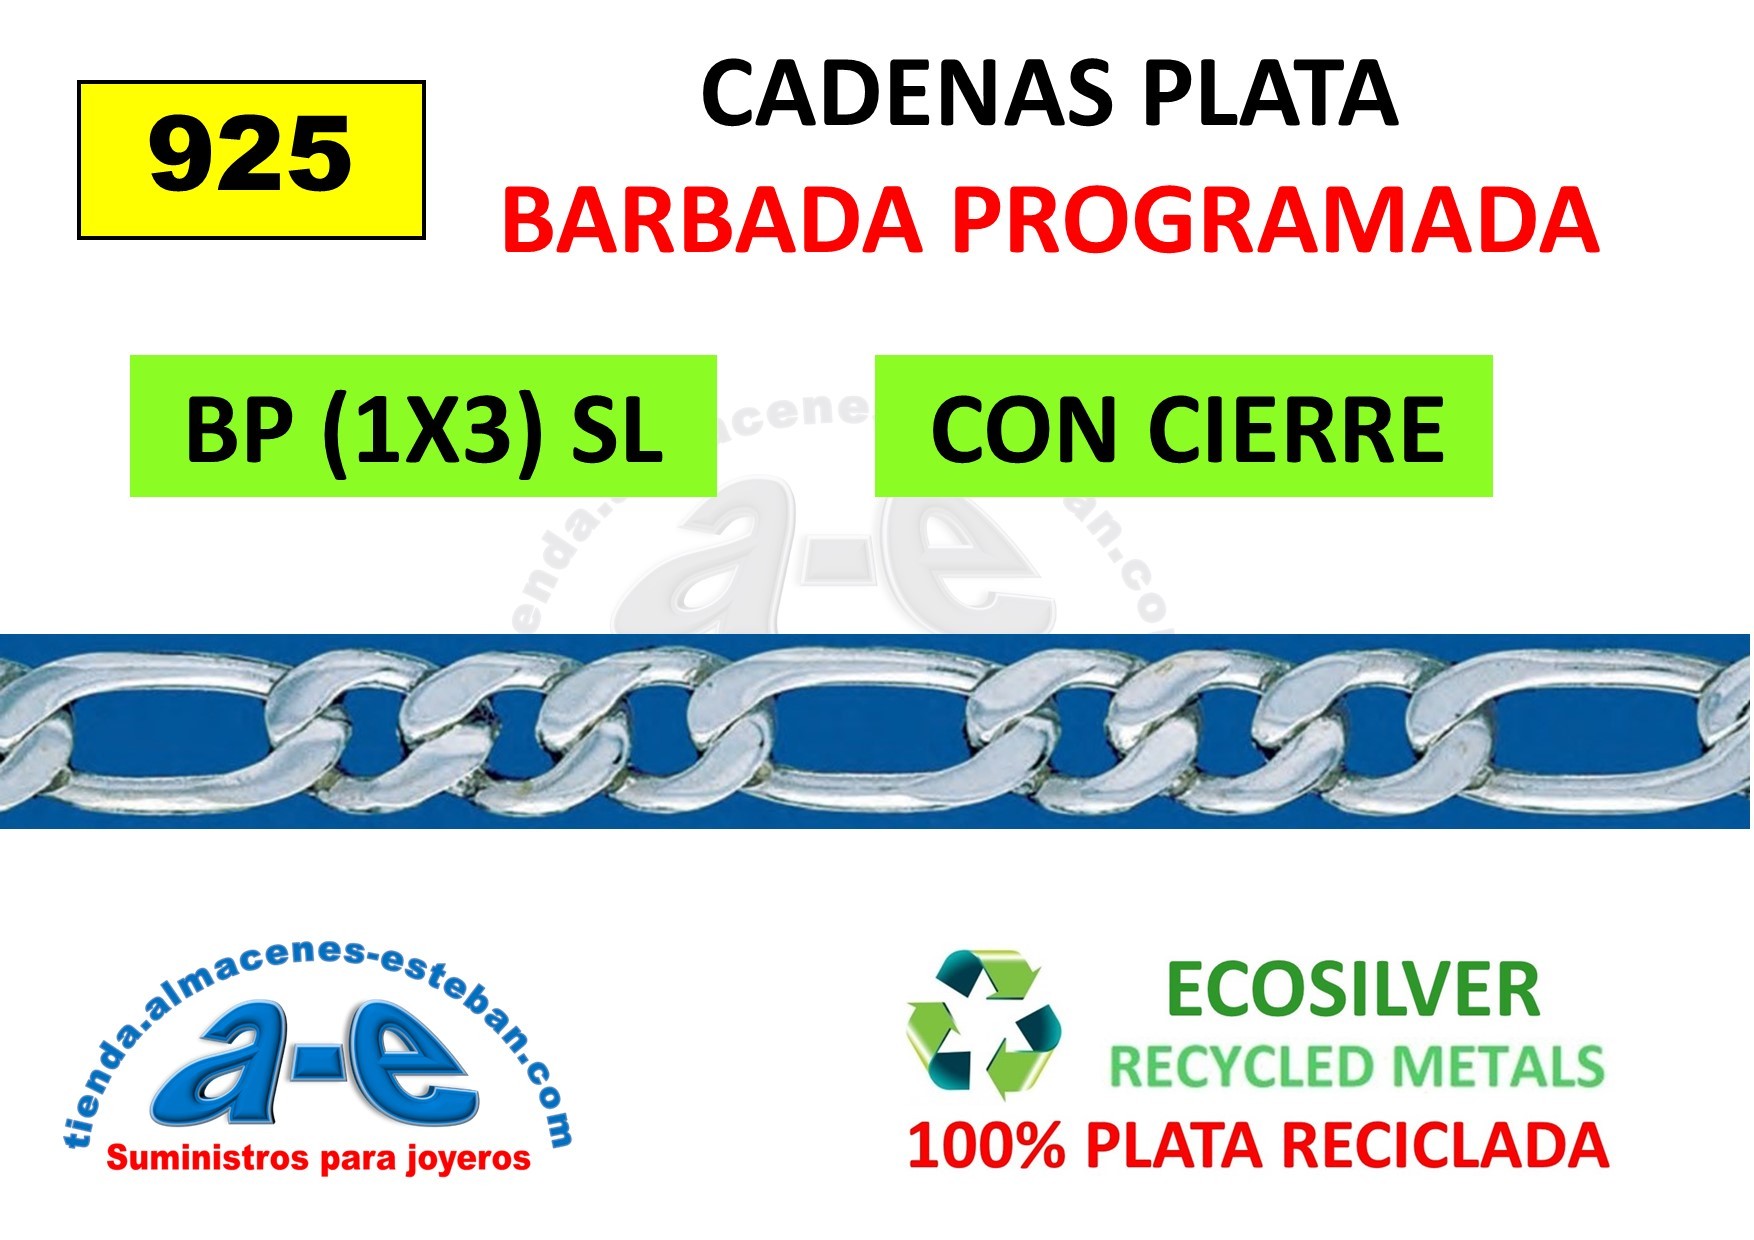 CADENAS PLATA BARBADA BP (1x3) SL